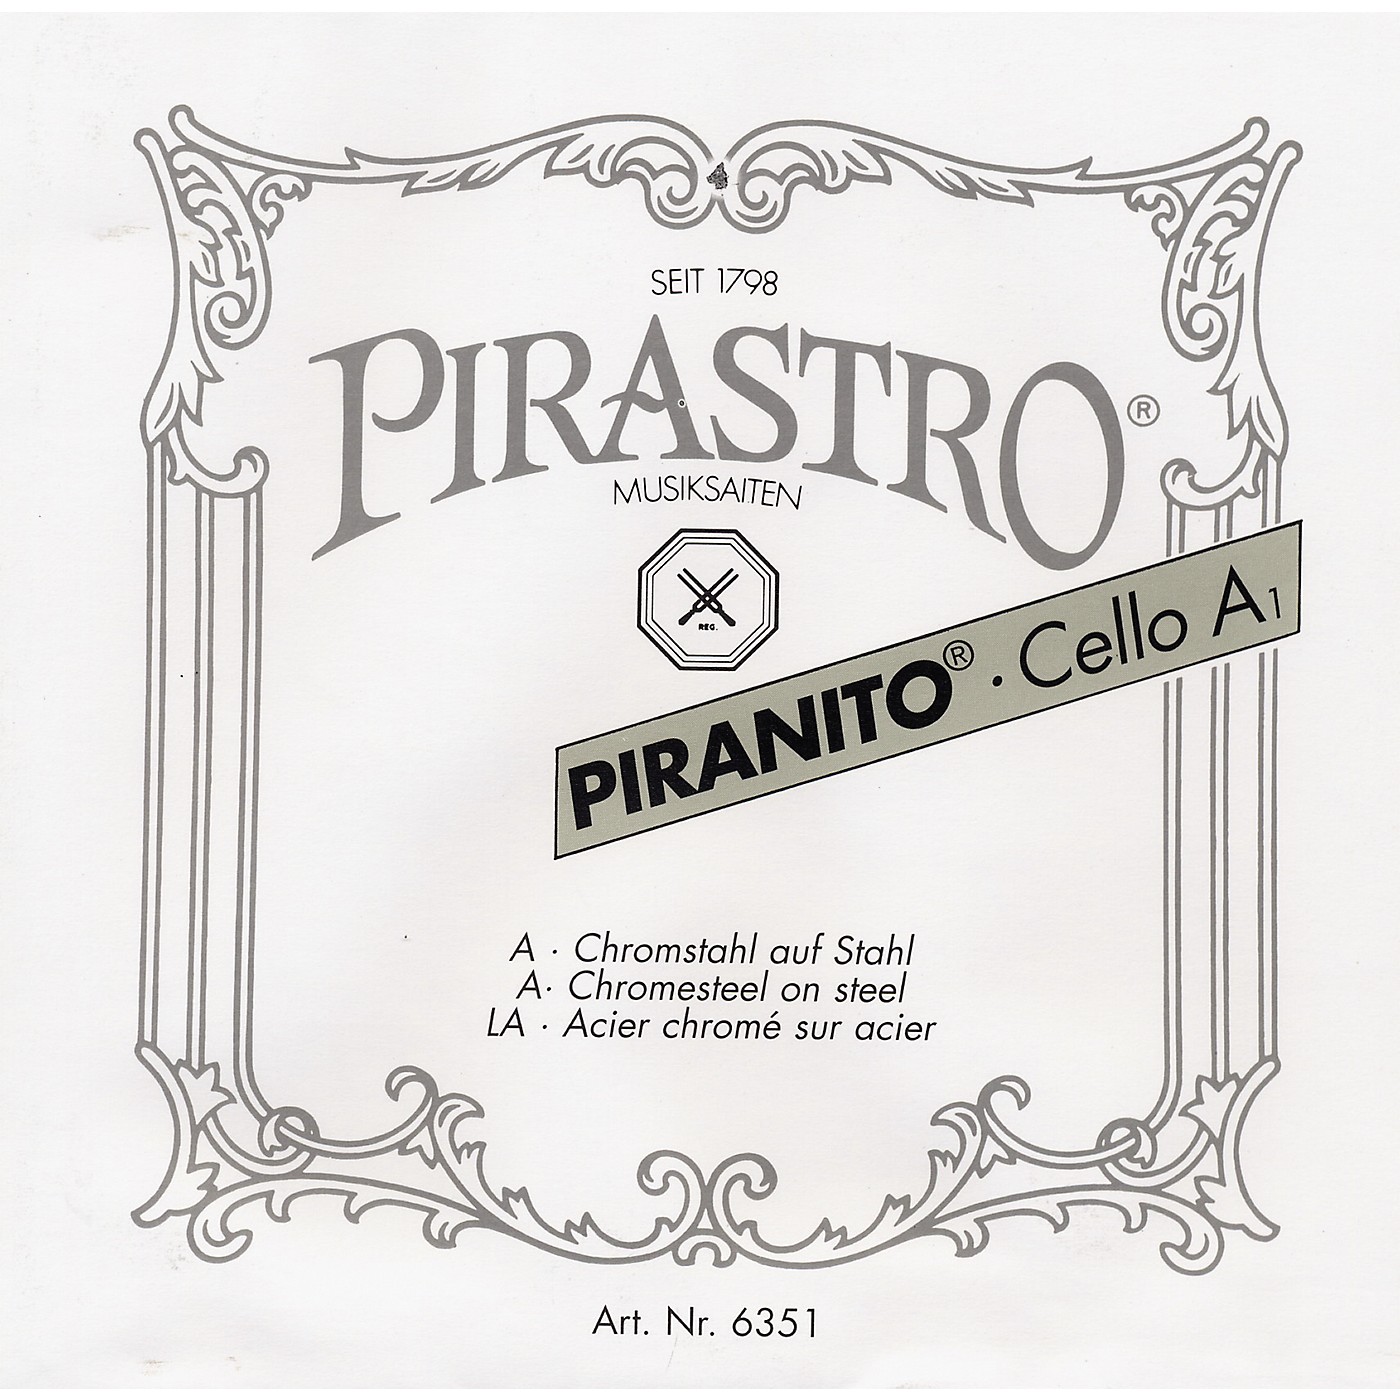 Pirastro Piranito Series Cello A String thumbnail